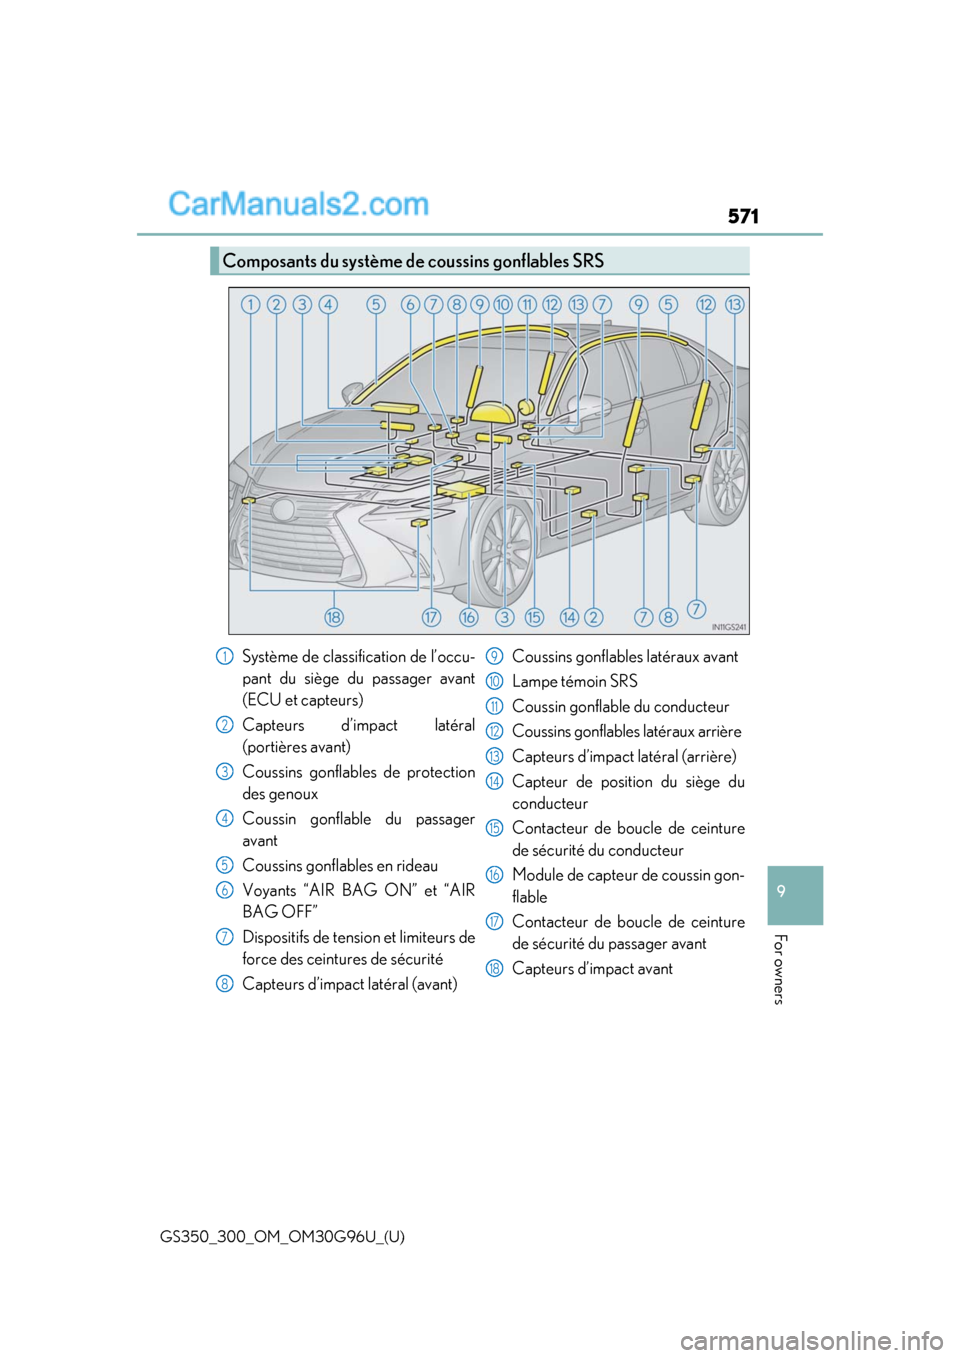 Lexus GS300 2019  Owners Manual GS350_300_OM_OM30G96U_(U)
571
9
For owners
Composants du système de coussins gonflables SRS
Système de classification de l’occu-
pant du siège du passager avant
(ECU et capteurs)
Capteurs d’imp